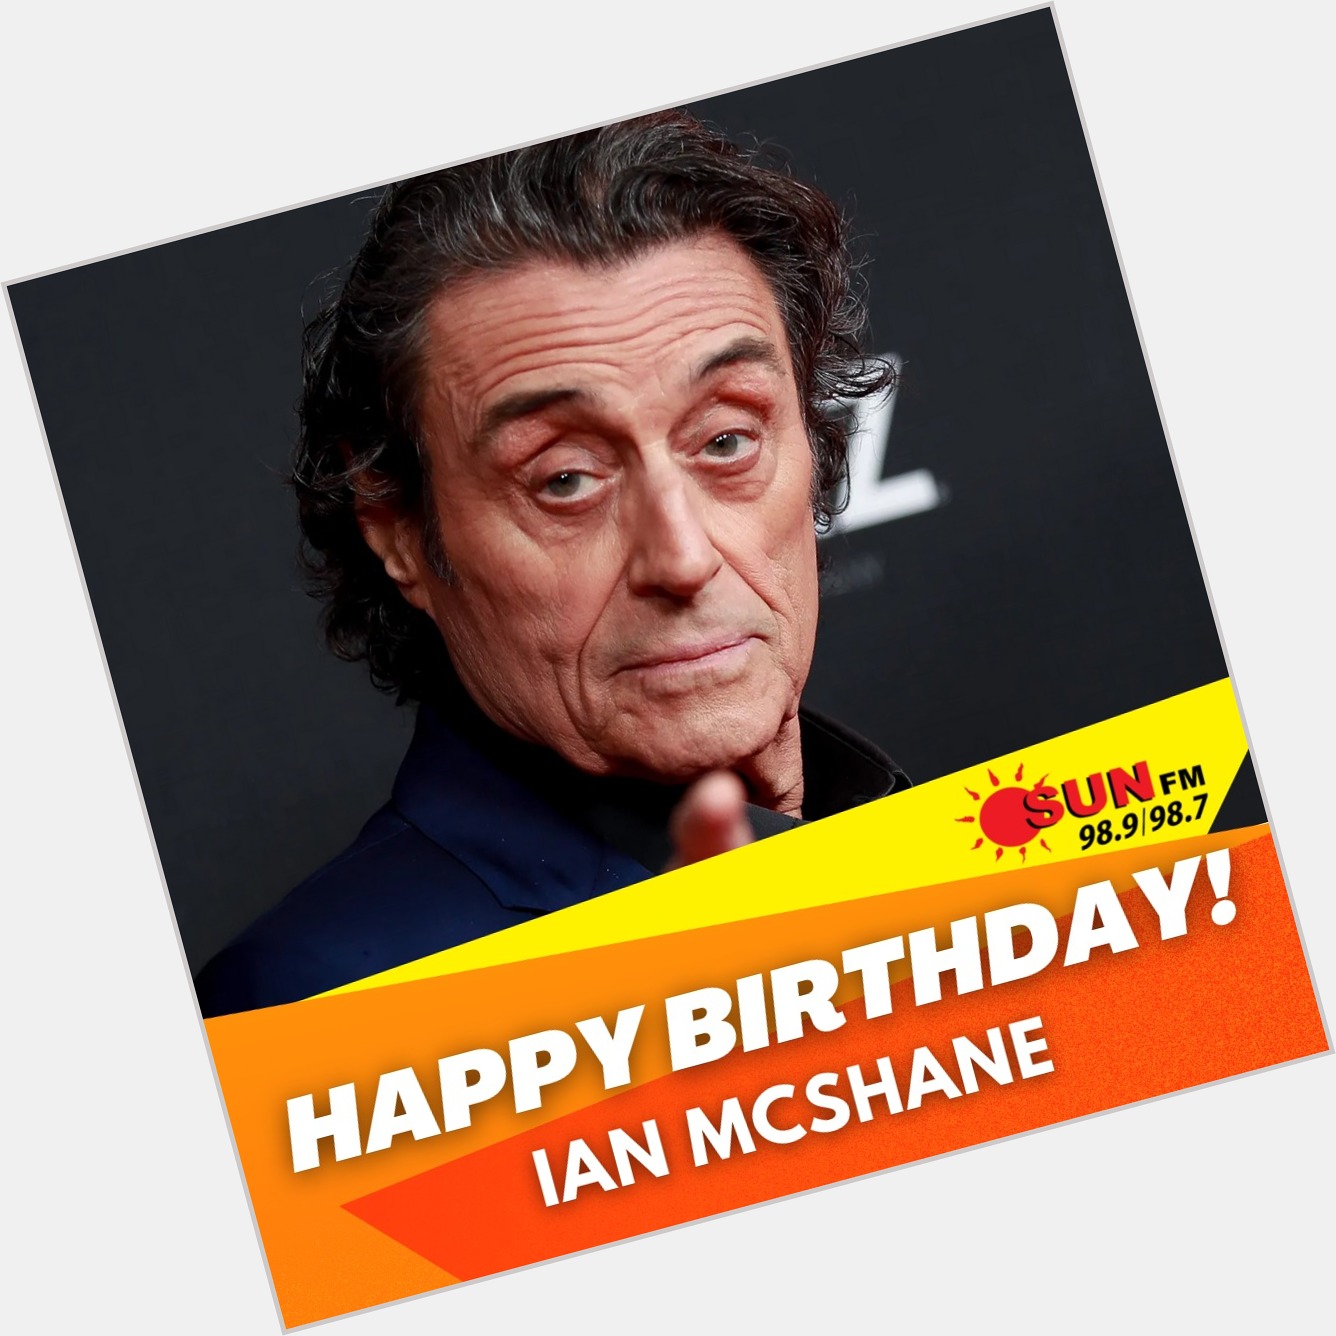 Happy Birthday to the Iconic Ian McShane!    